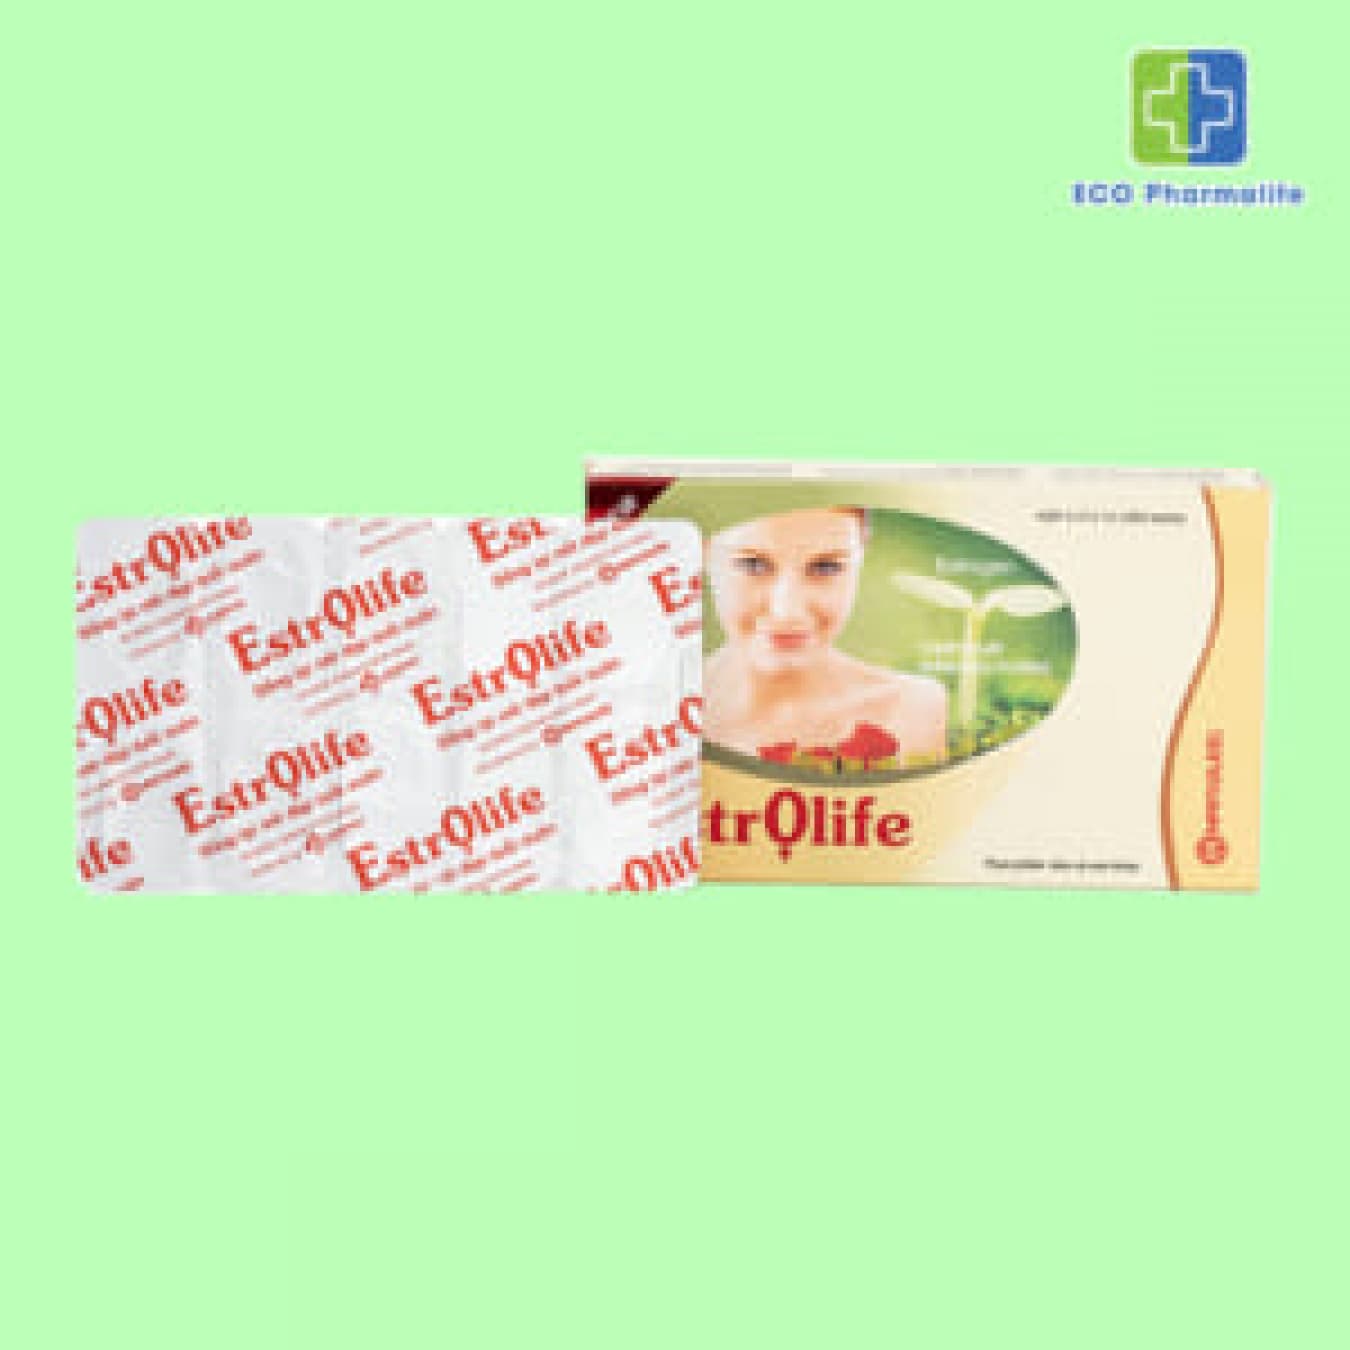 Estrolife - Viên uống bổ sung estrogen giúp cân bằng nội tiết tố nữ